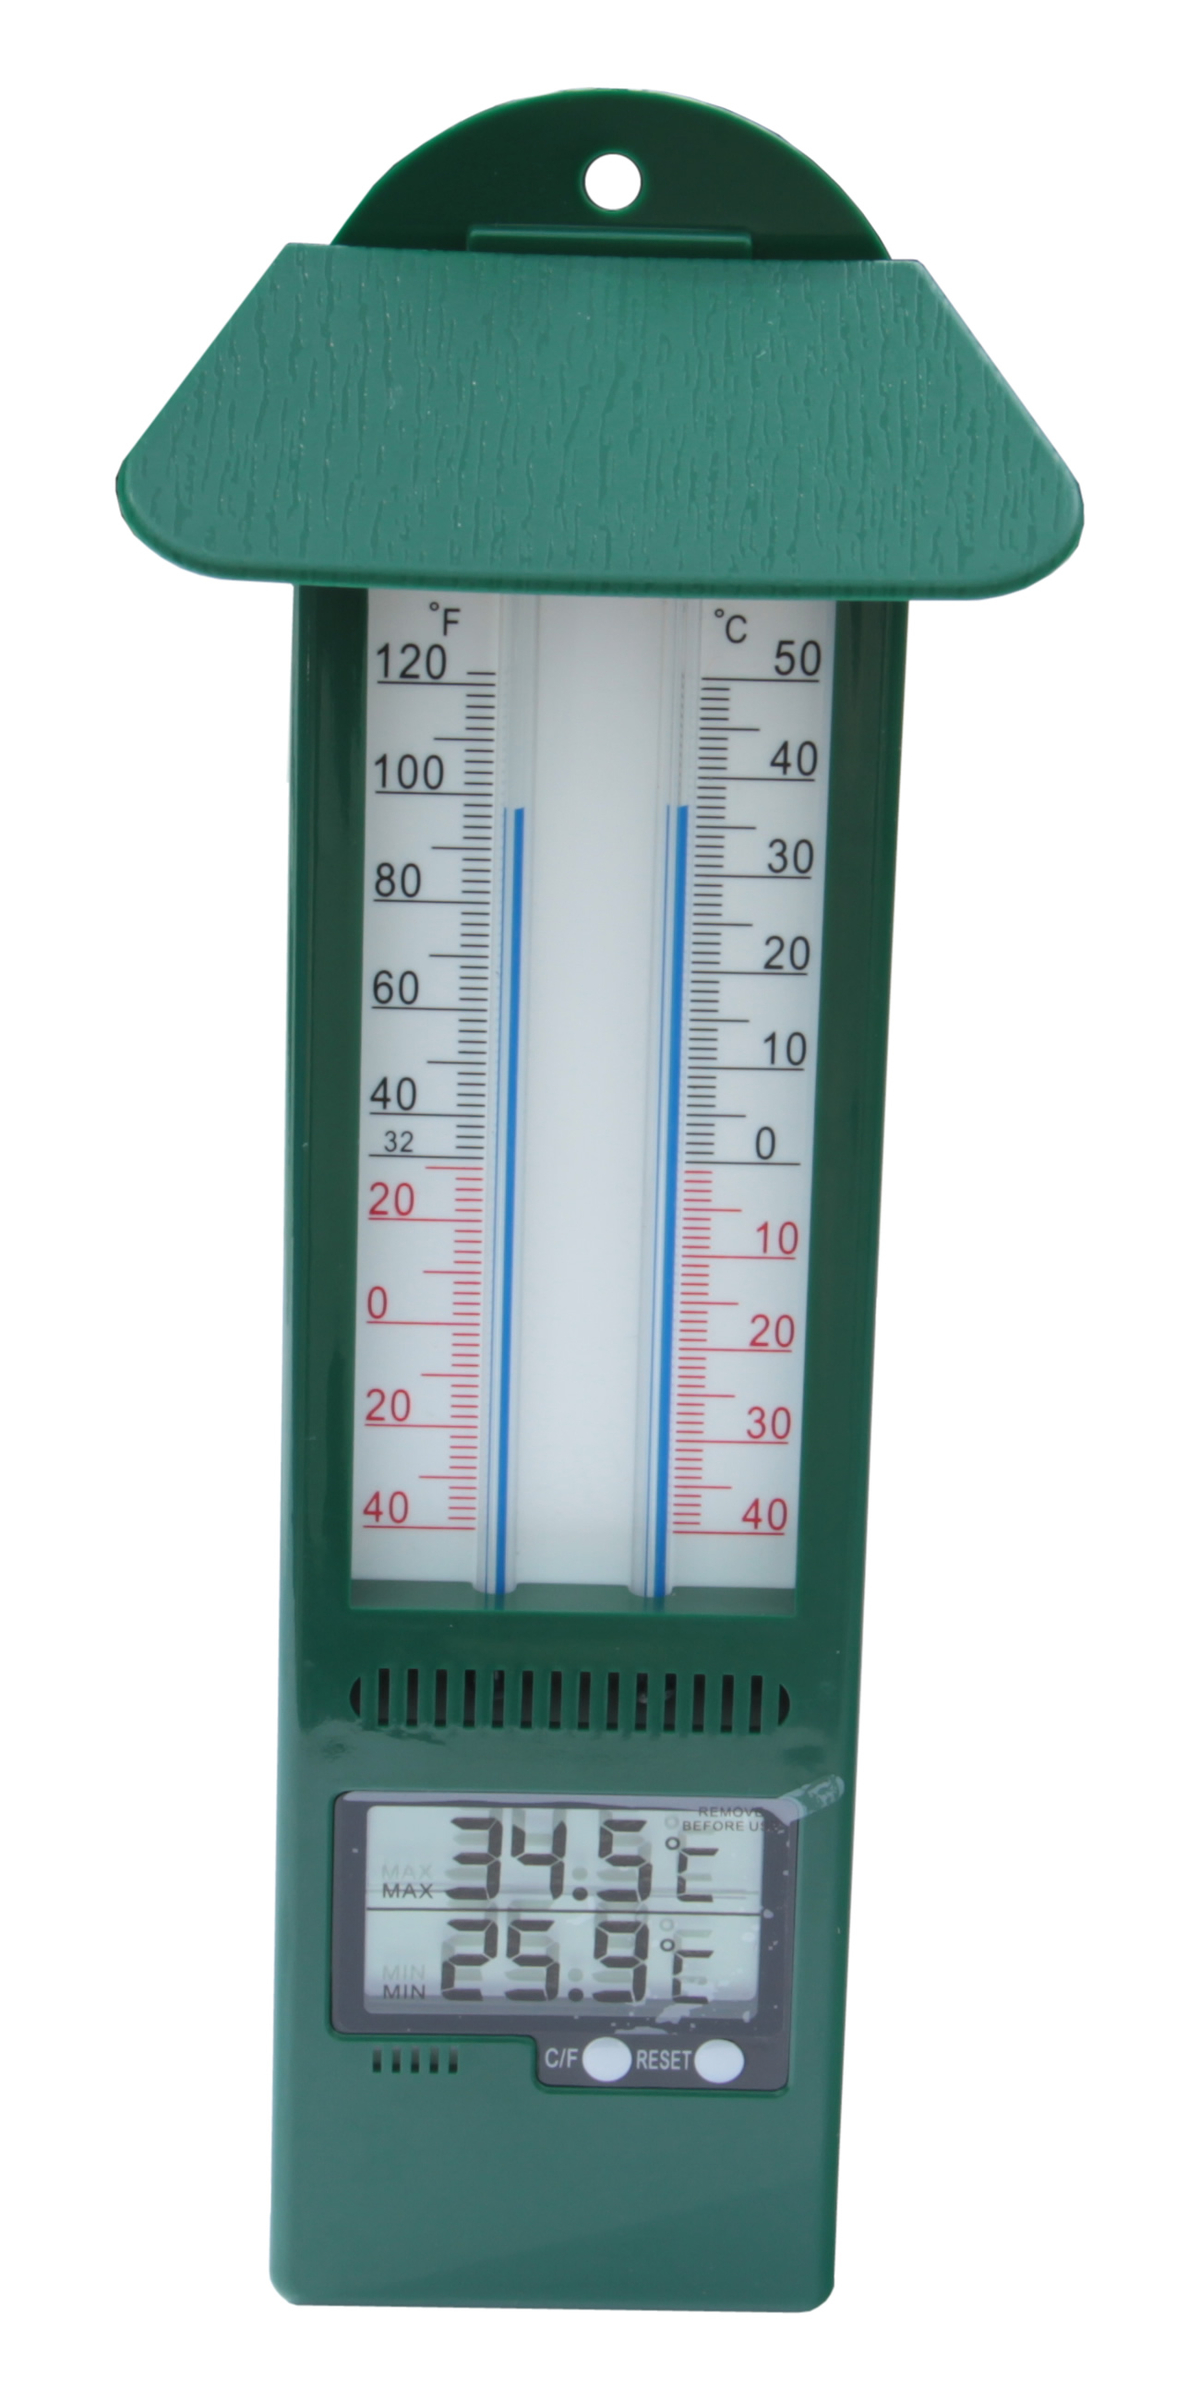 Digital max min thermometer